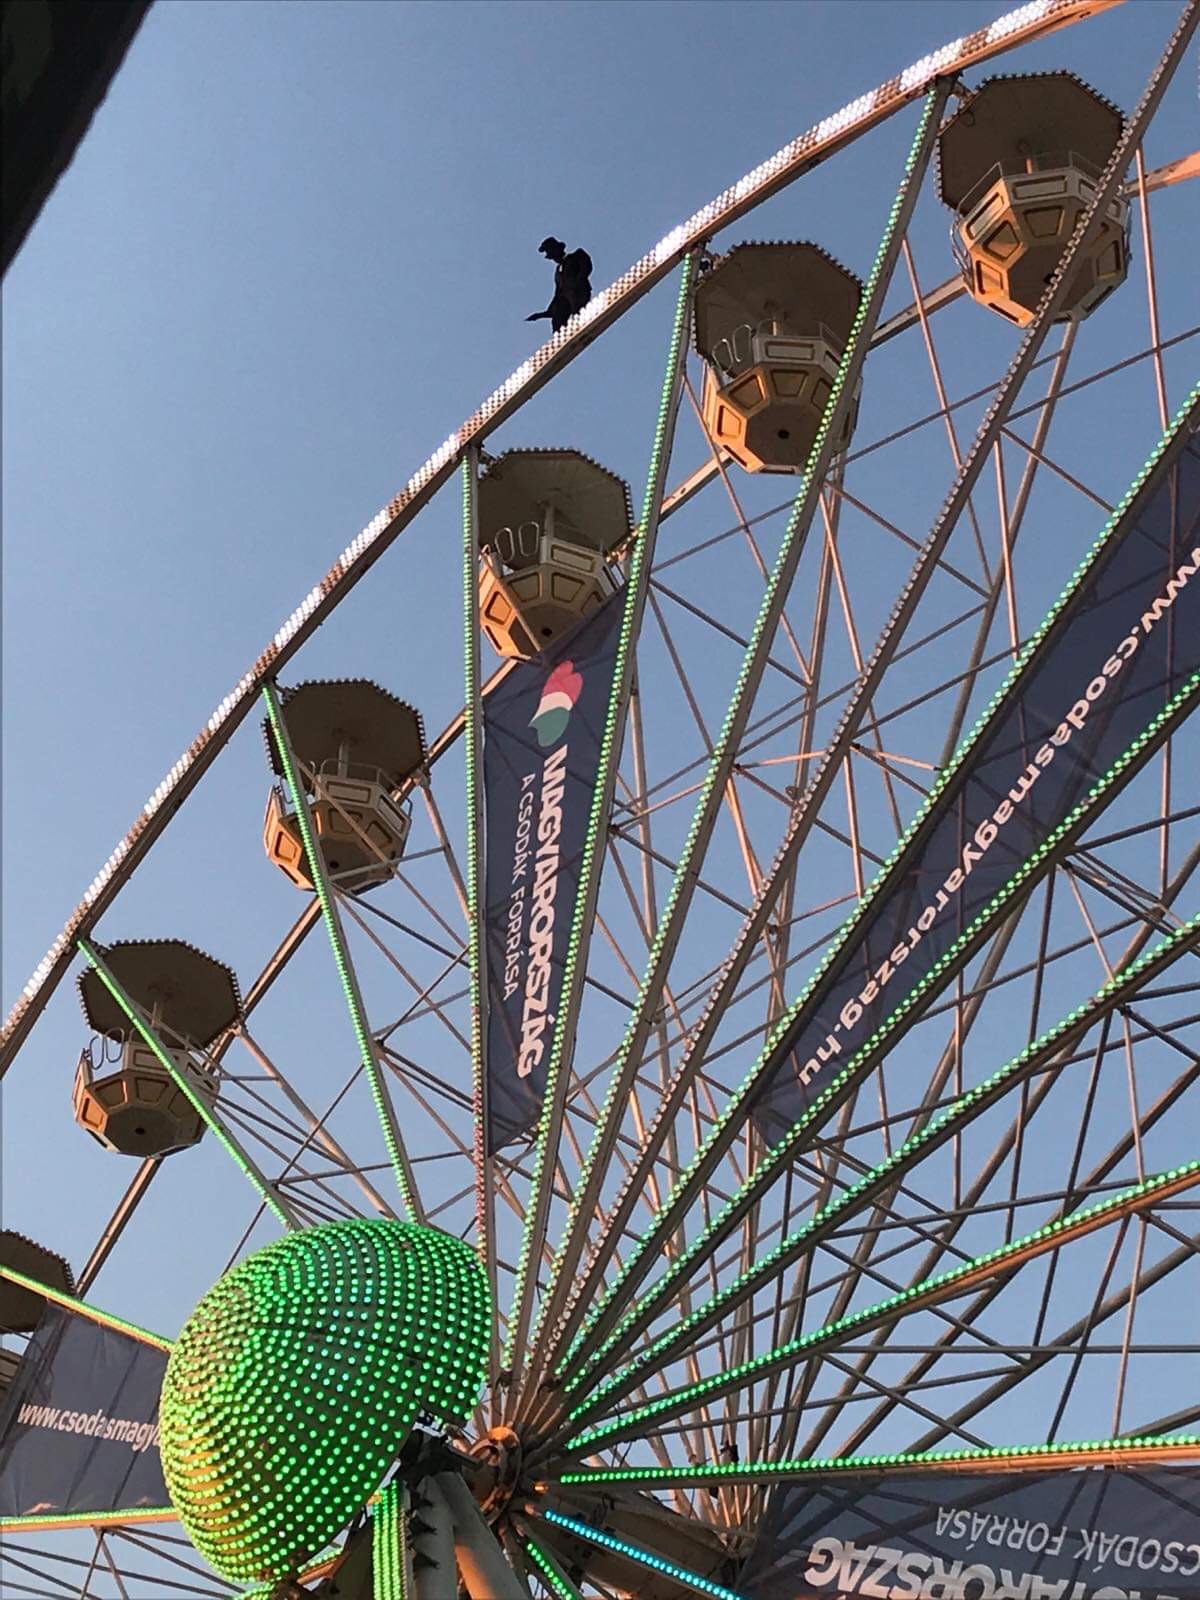 Újra akcióban az Esernyős Ember: most a Strand Fesztivál óriáskerekének  tetején jelent meg - fotó - Blikk